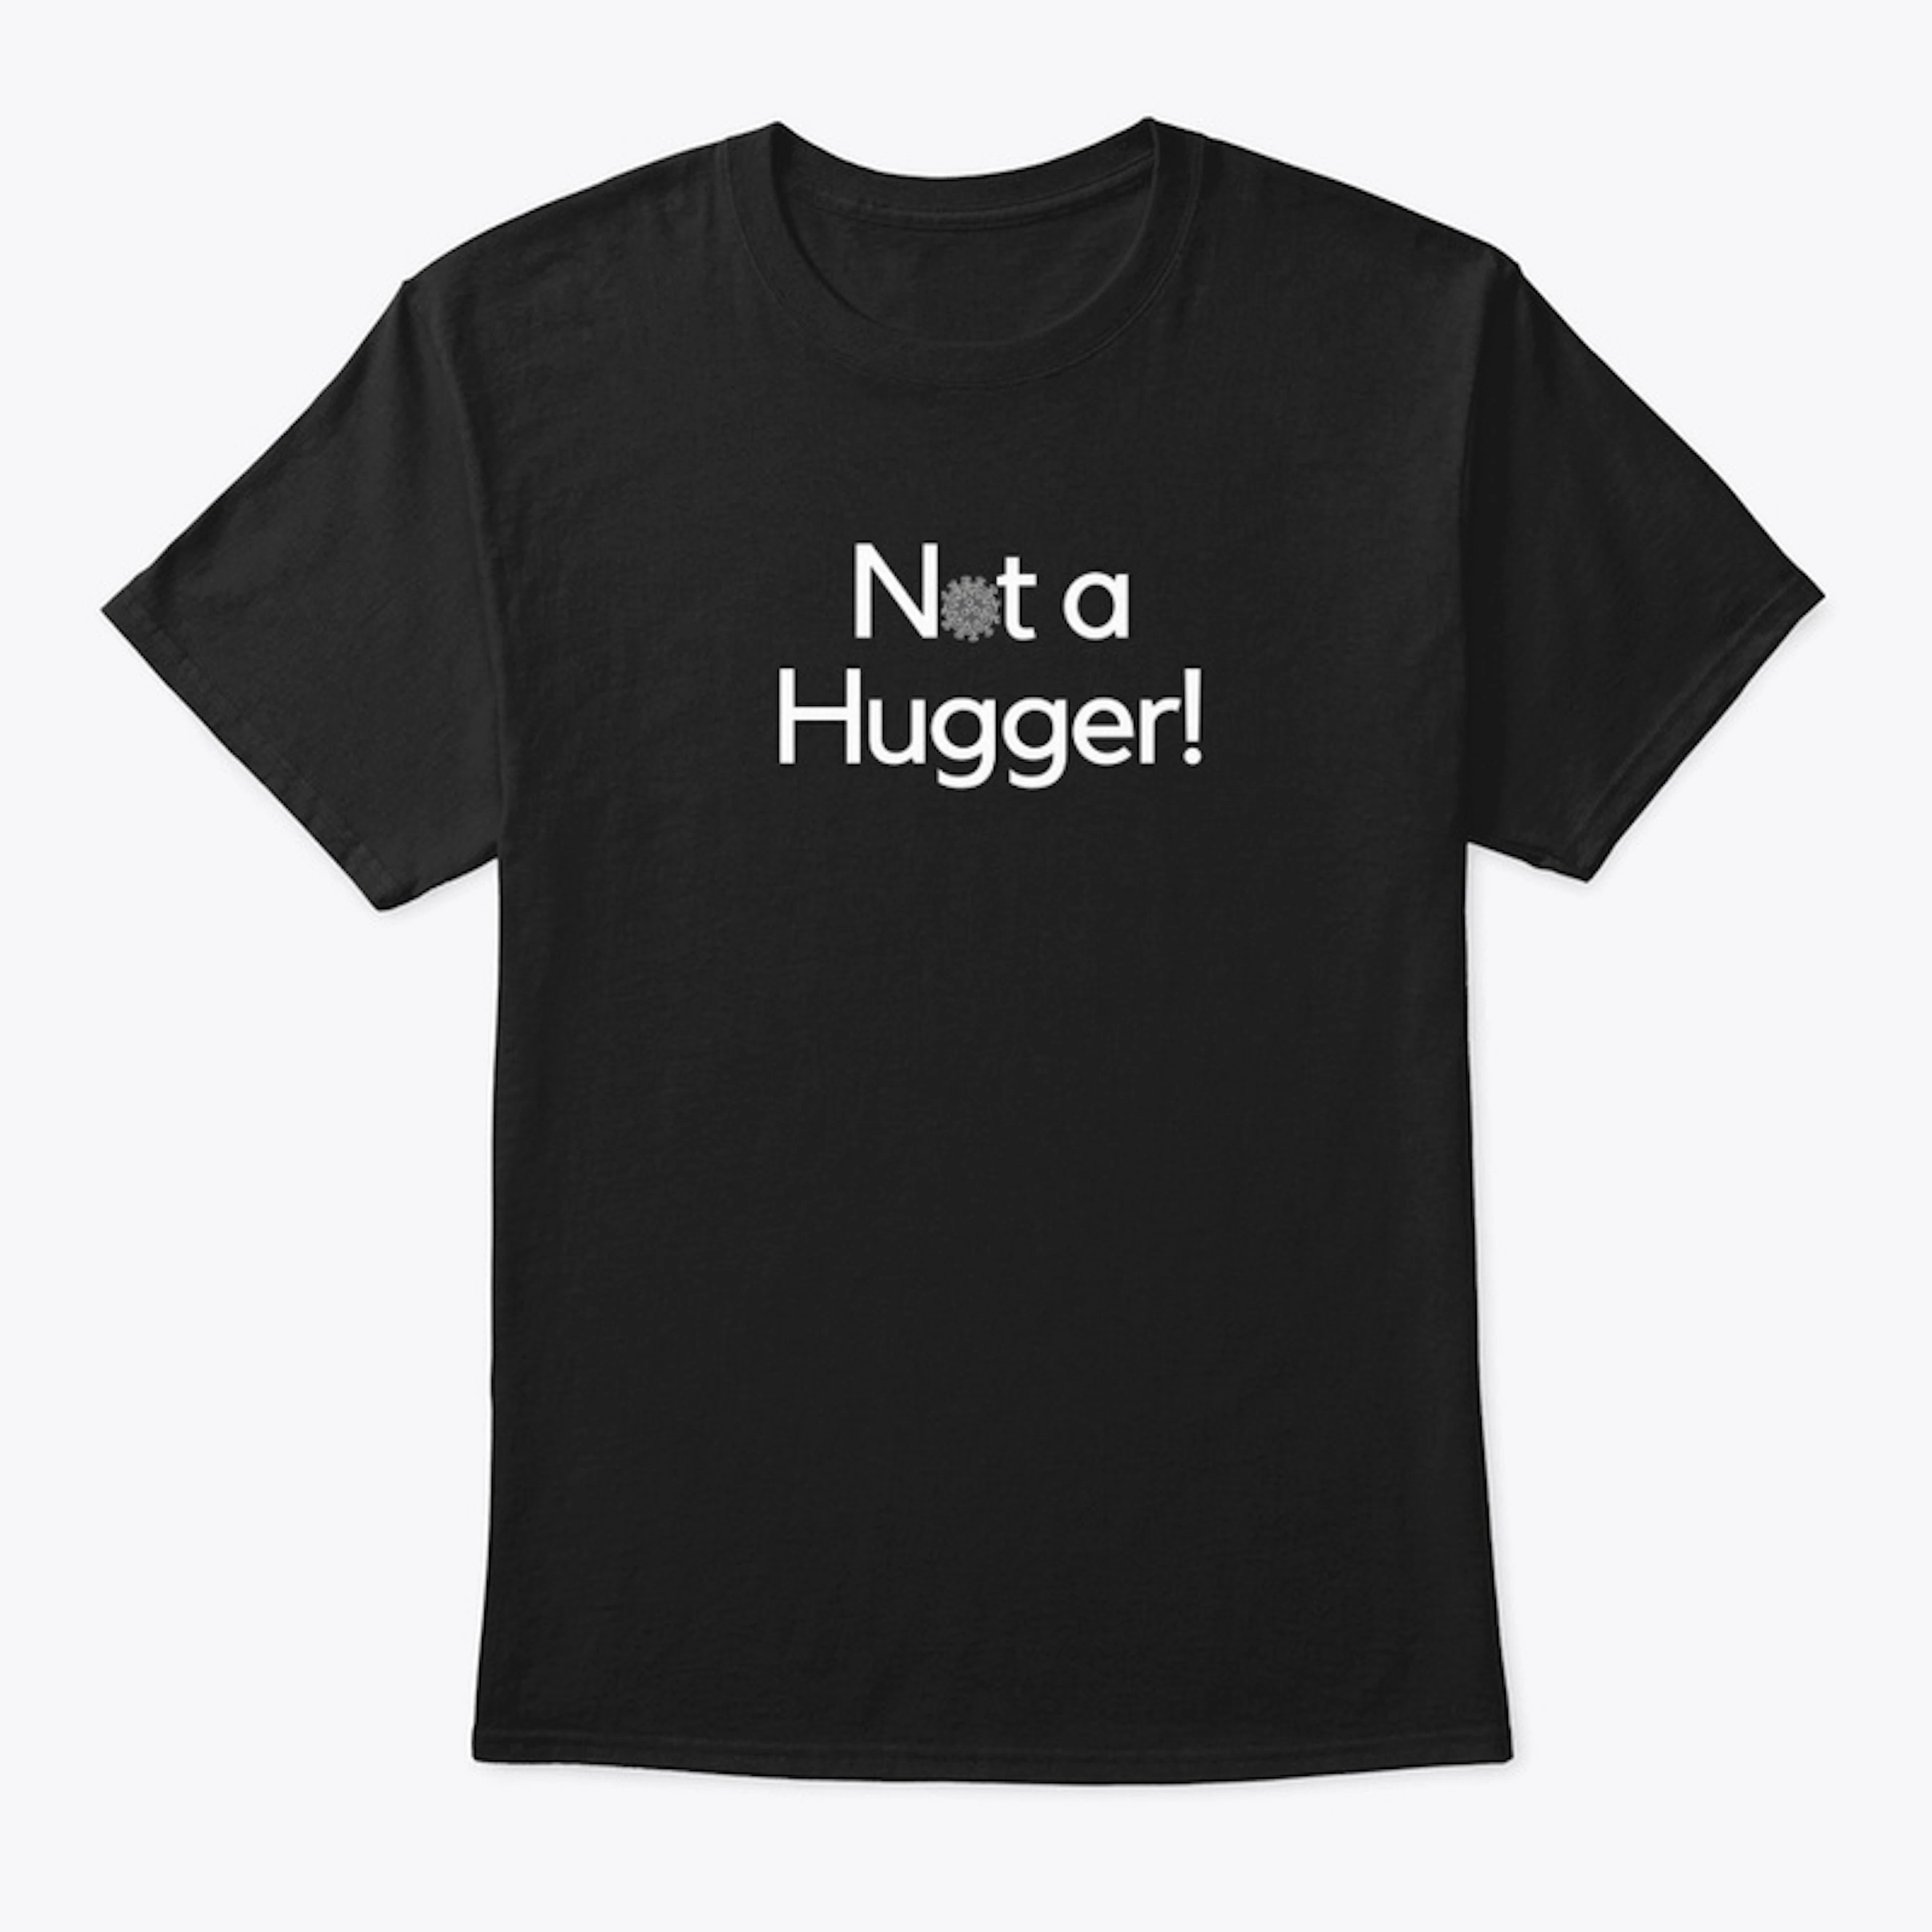 Not a Hugger